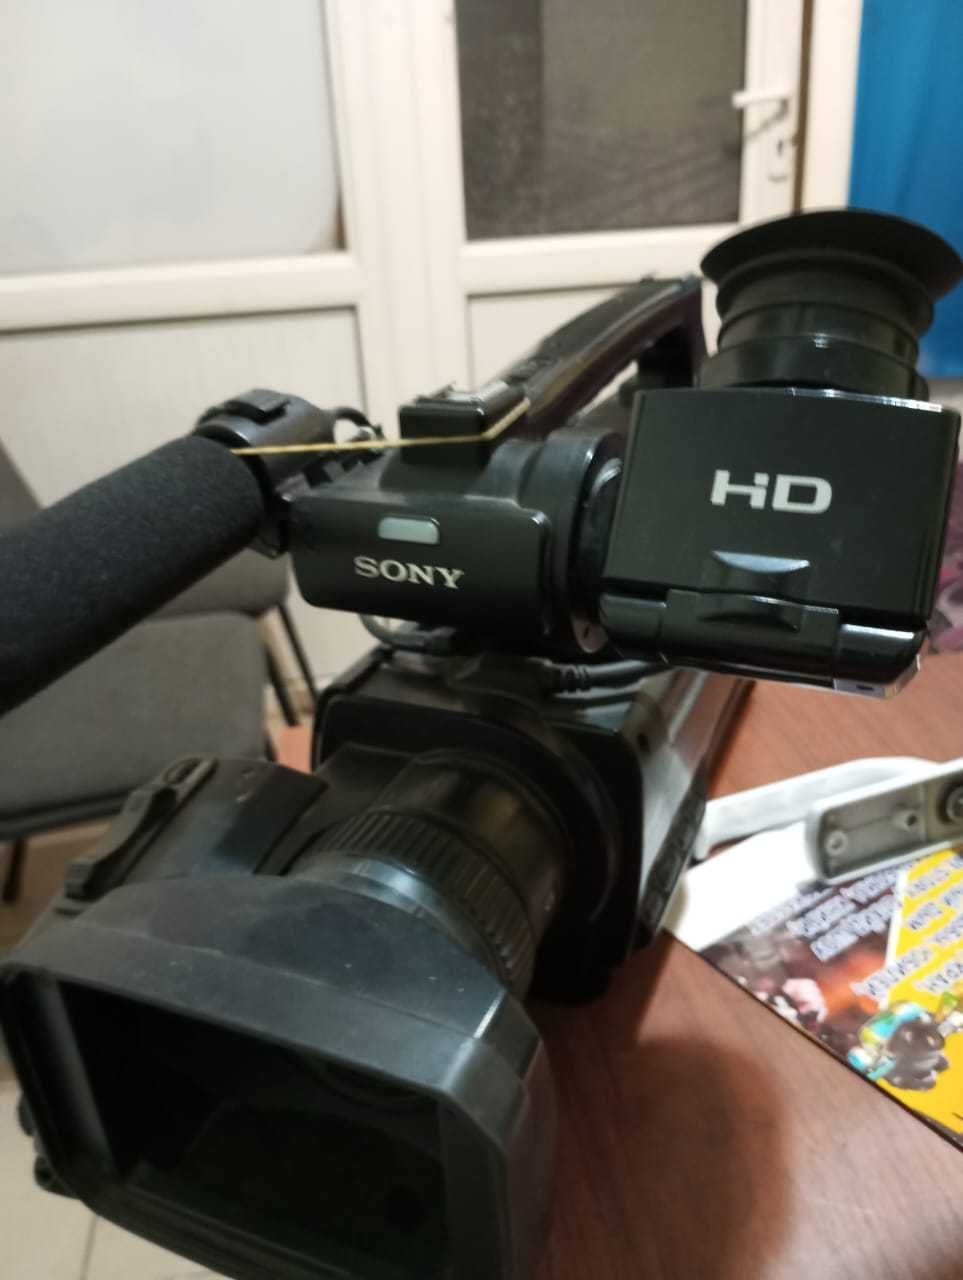 Продается Камера Soni hd 1500. В комплекте батерейка и сумка.  Б/у